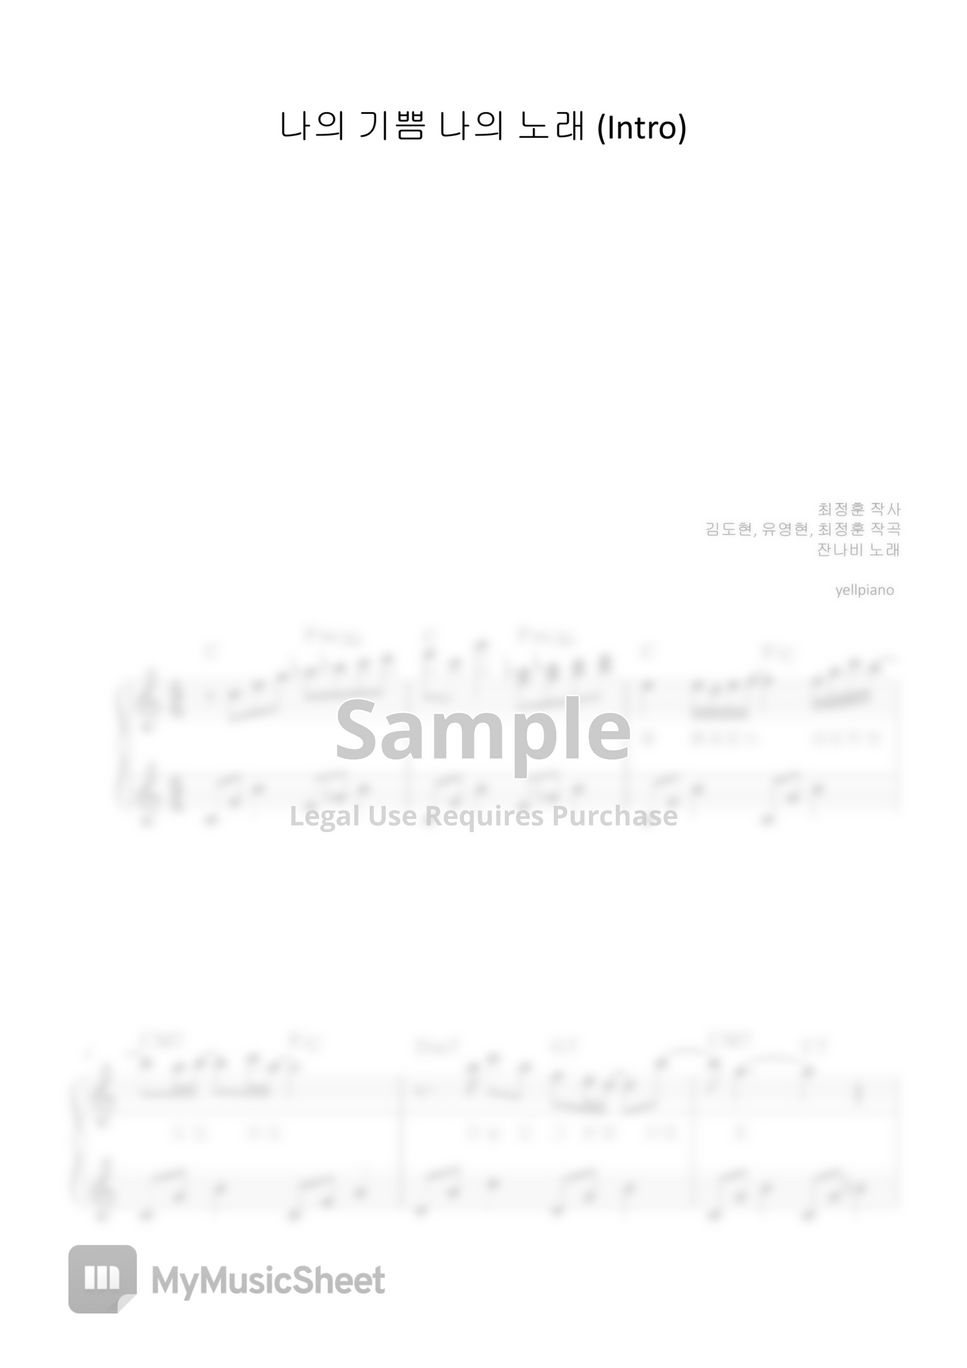 잔나비 - 나의 기쁨 나의 노래(Intro) (피아노솔로) by yellpiano